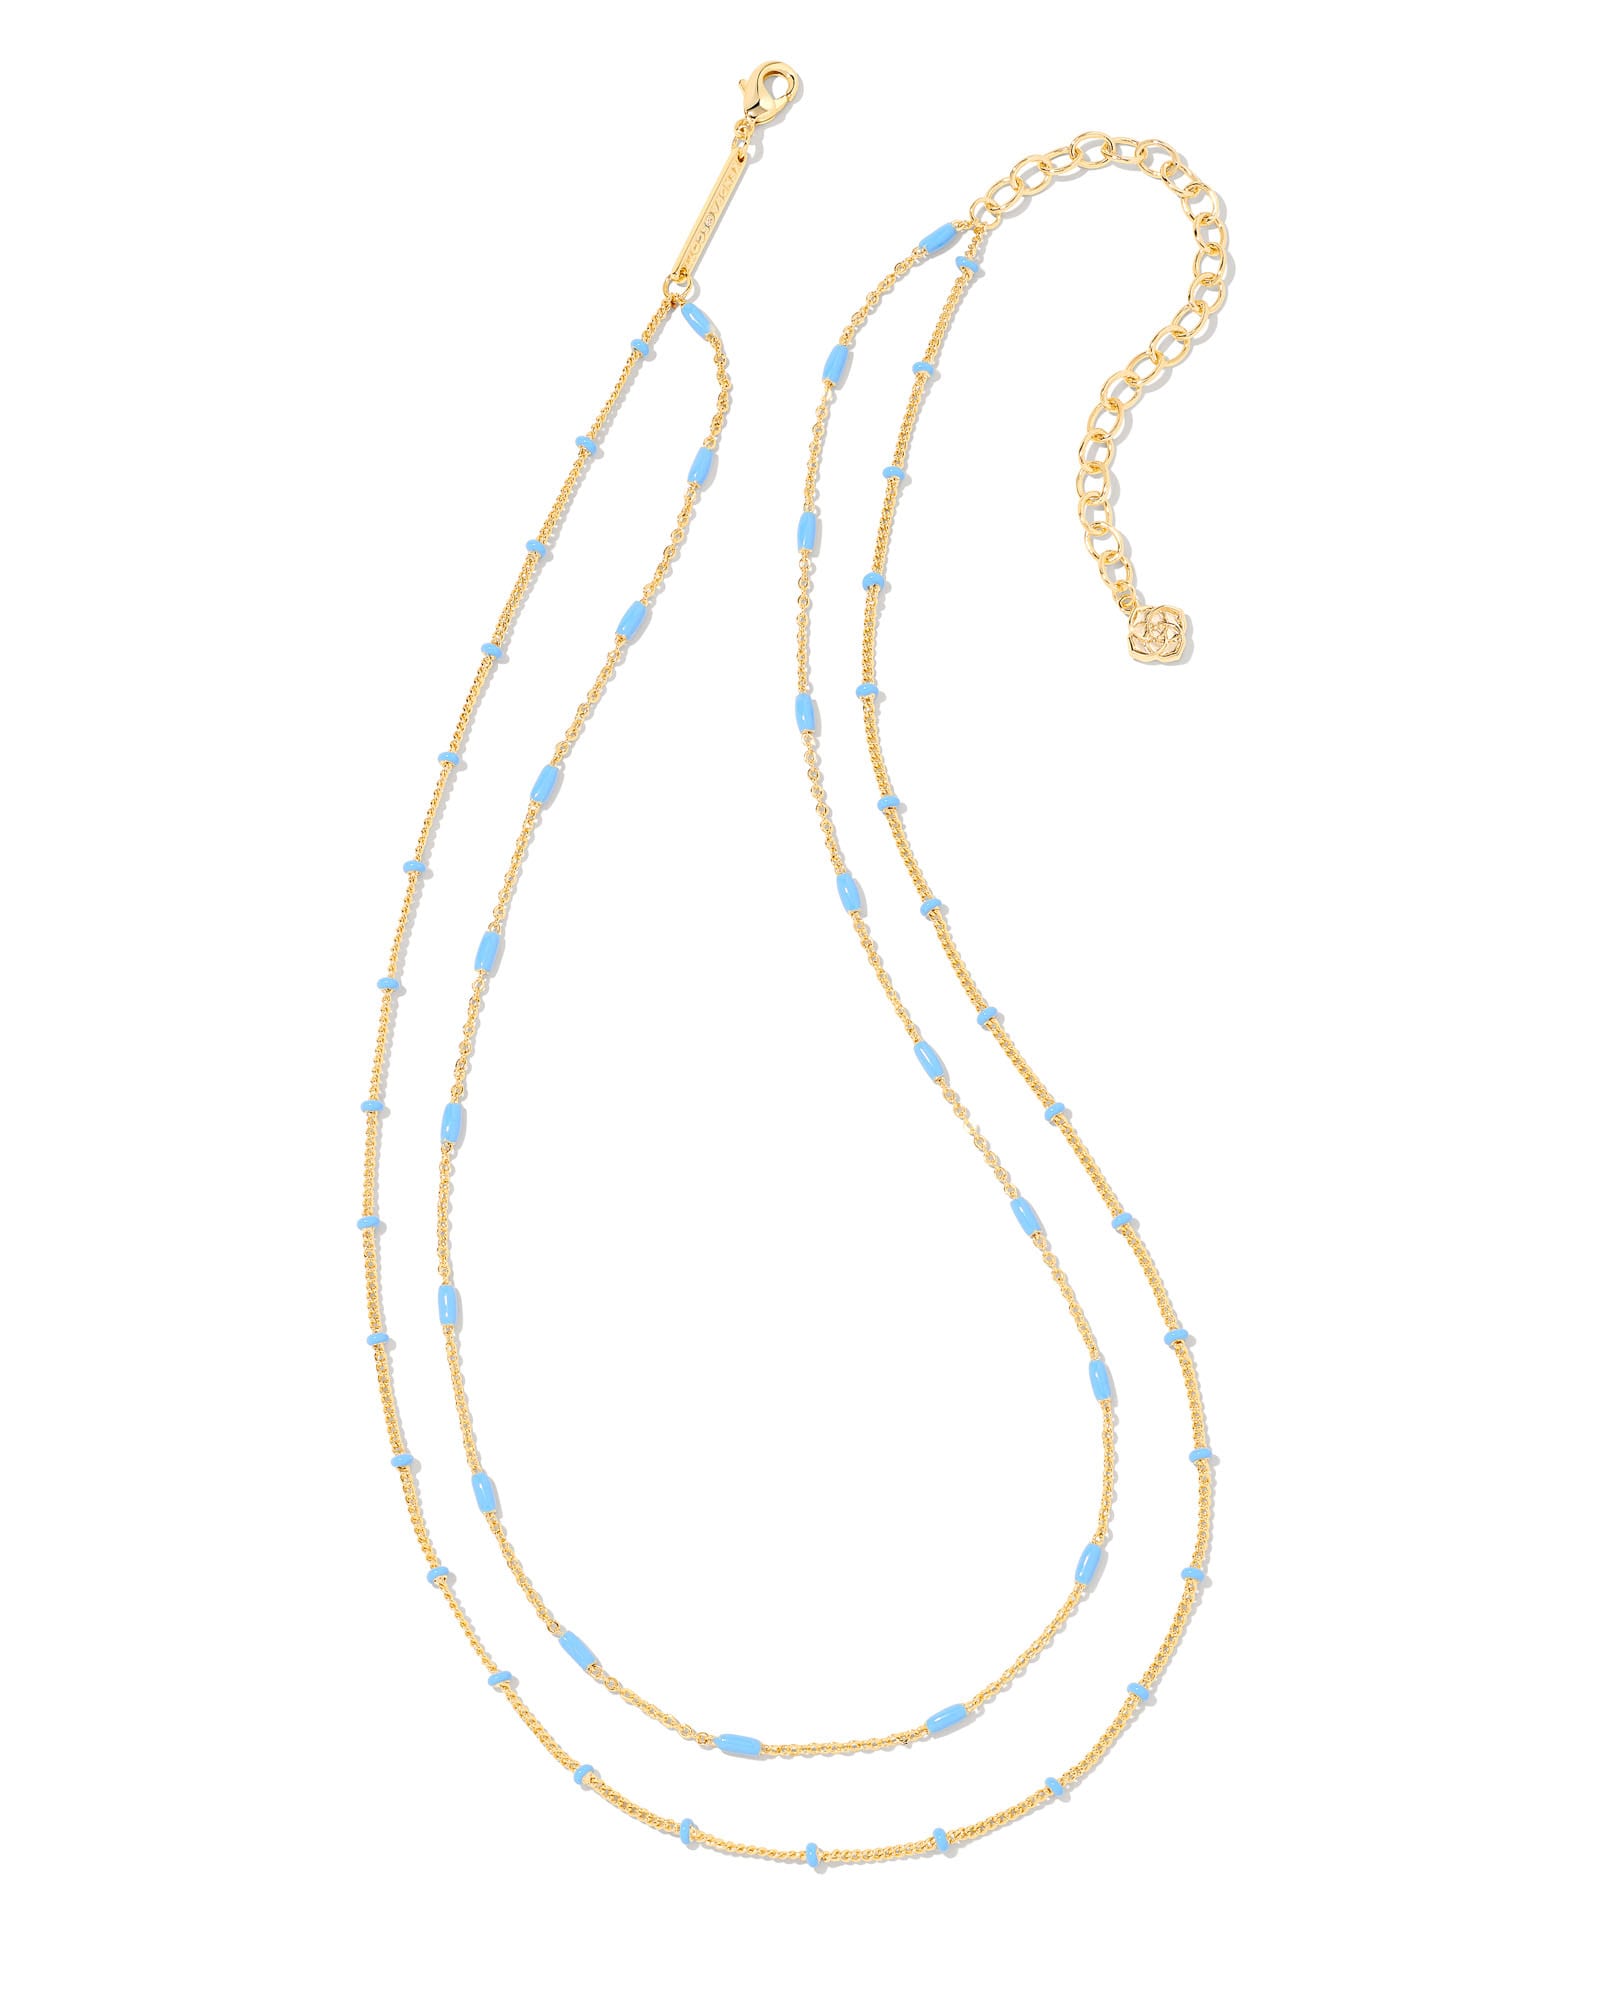 Kendra Scott Dottie Gold Multi Strand Necklace in Periwinkle | Enamel